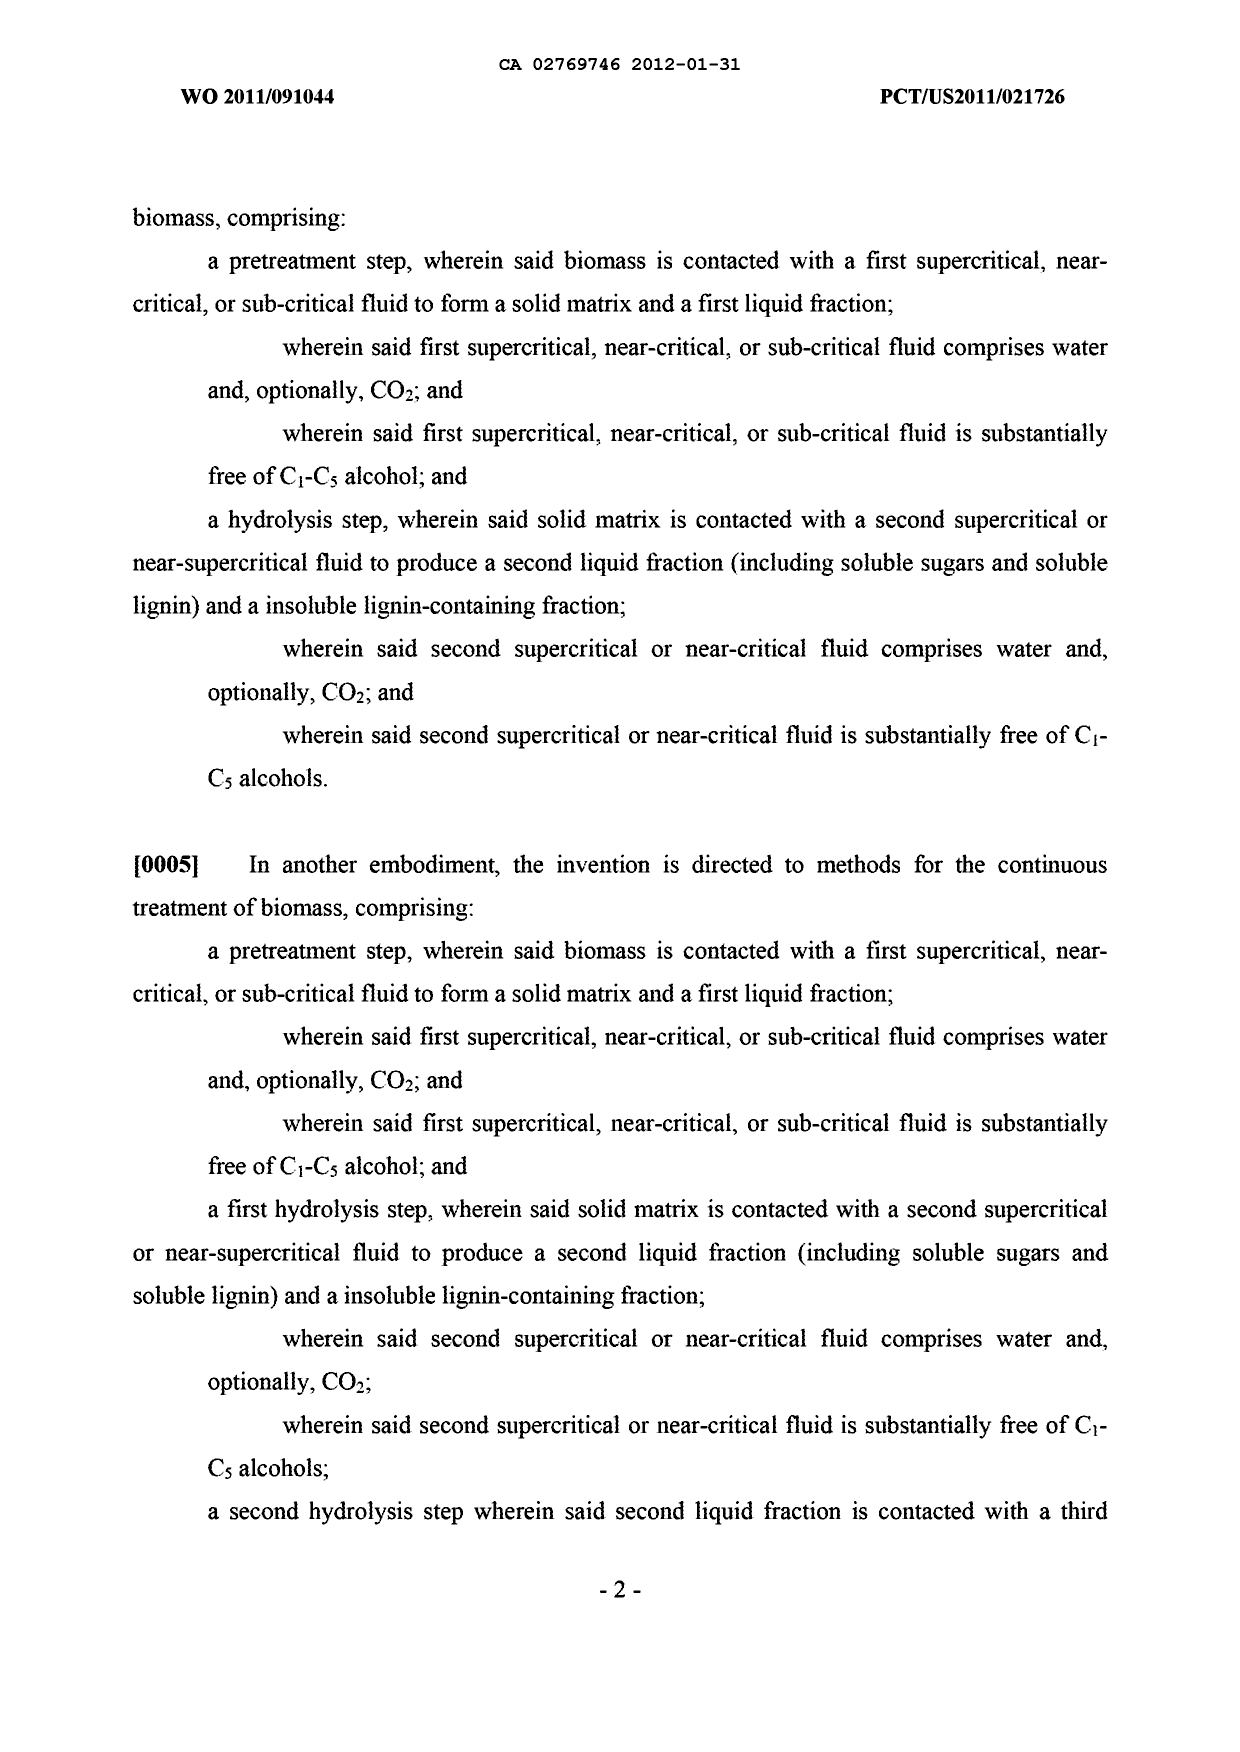 Canadian Patent Document 2769746. Description 20111231. Image 2 of 42